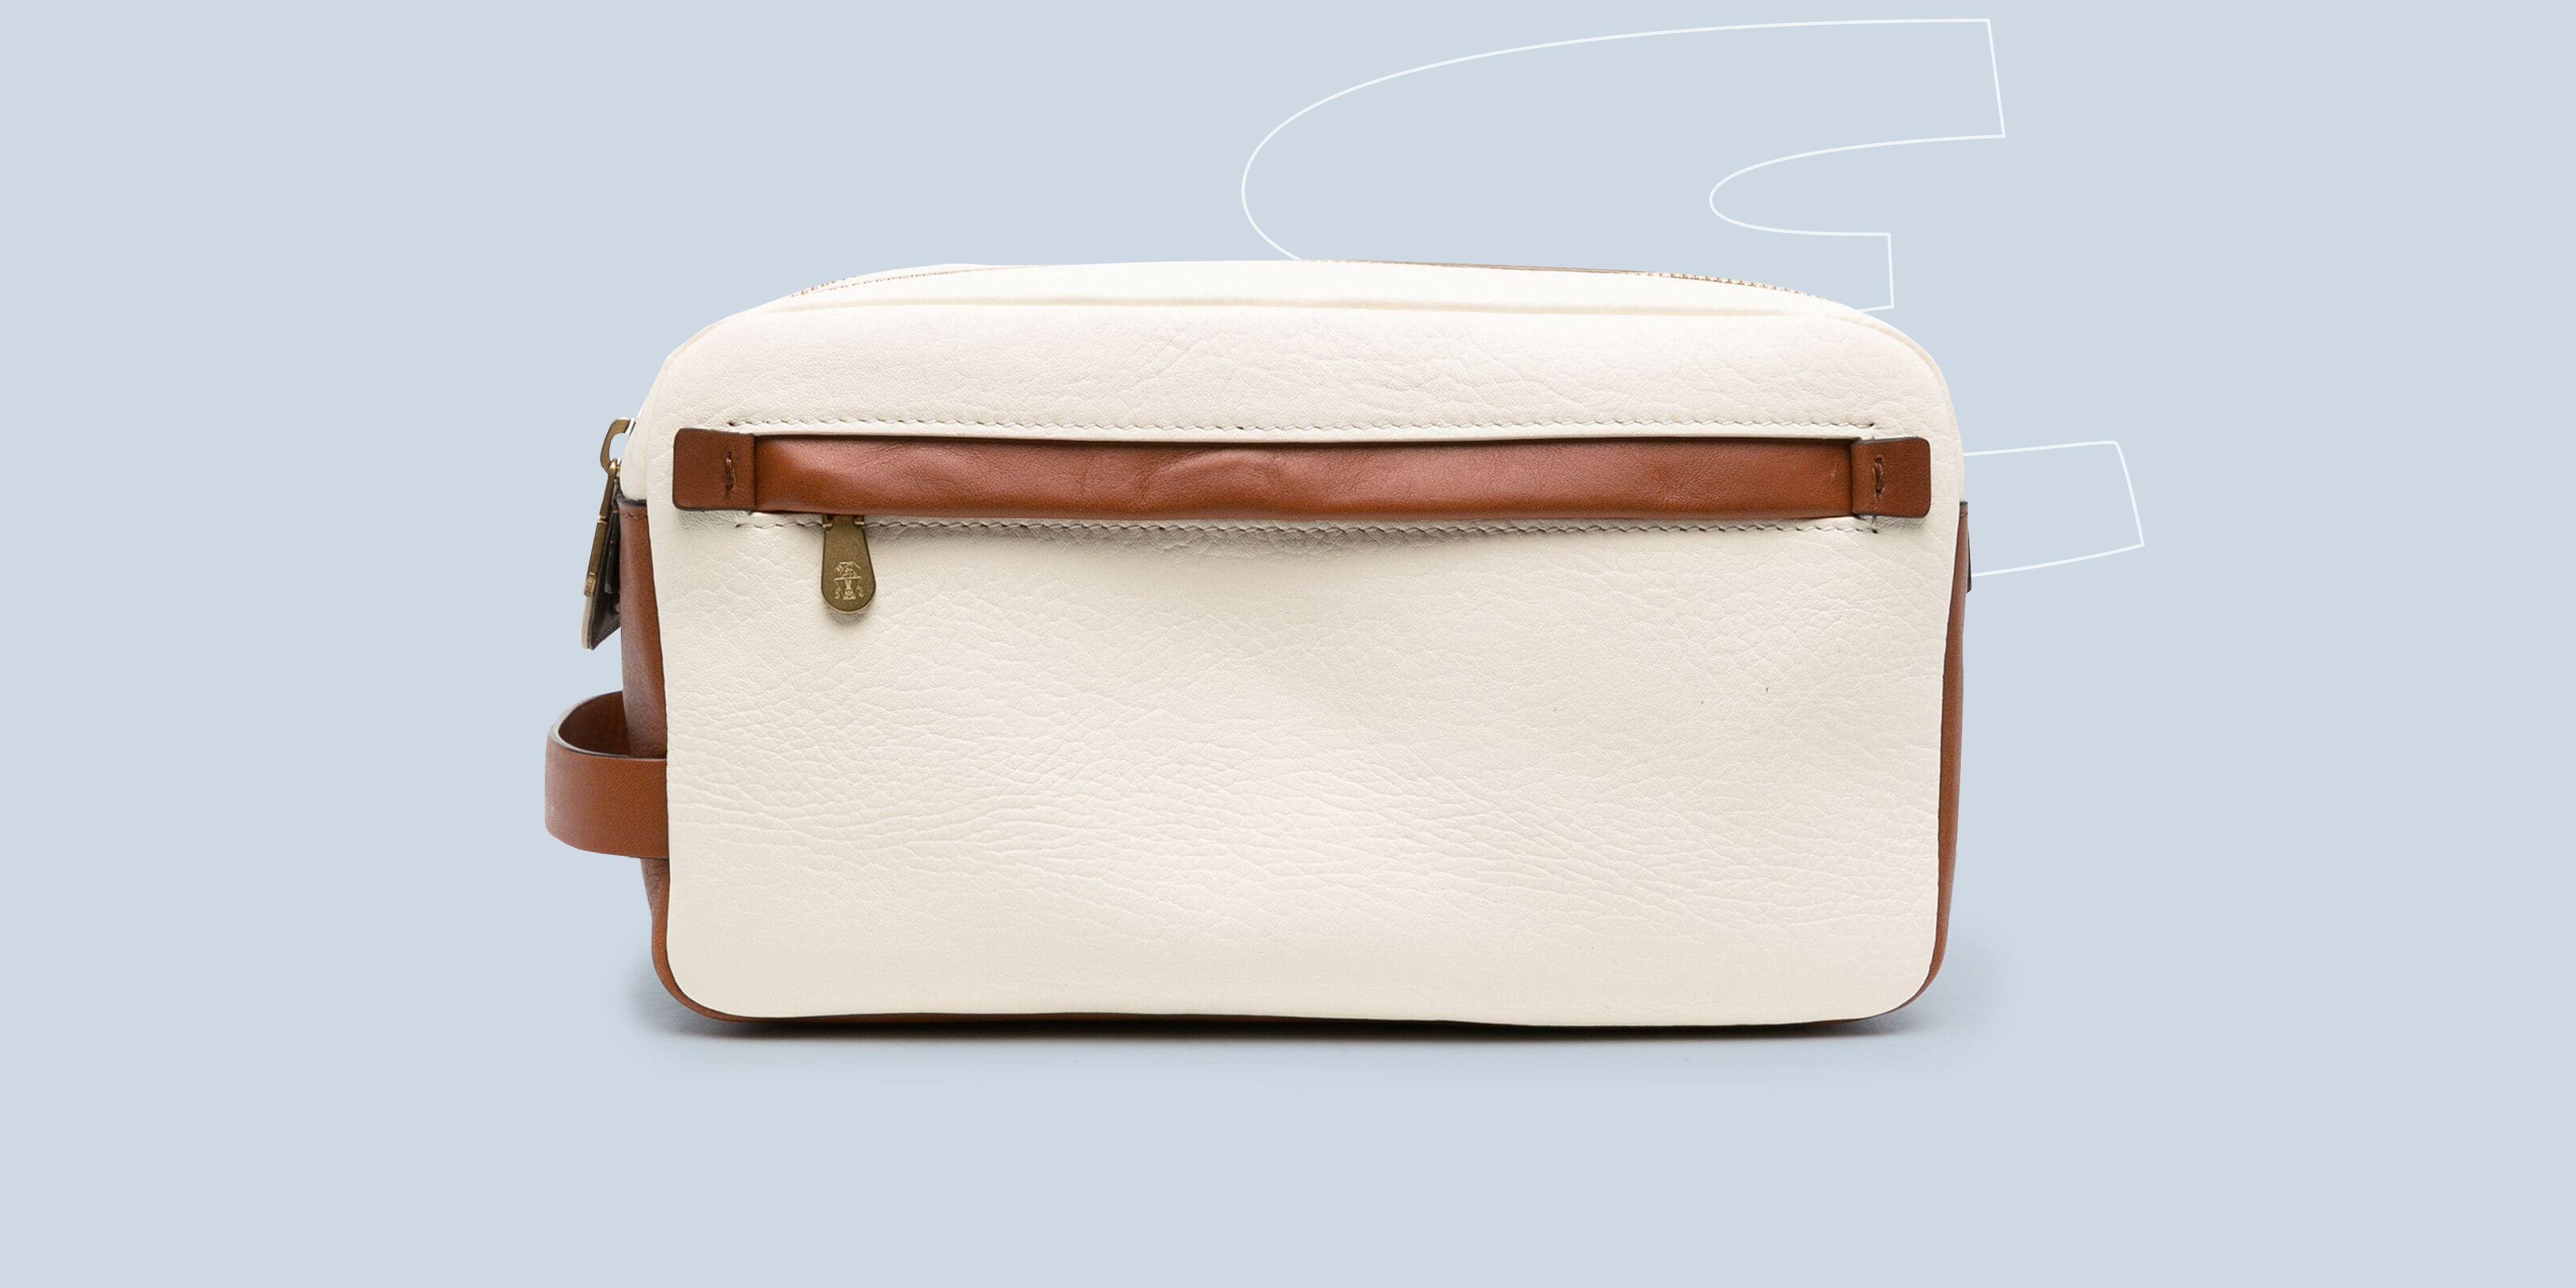 Where can I buy a Louis Vuitton 'vintage' handbag under $500? - Quora